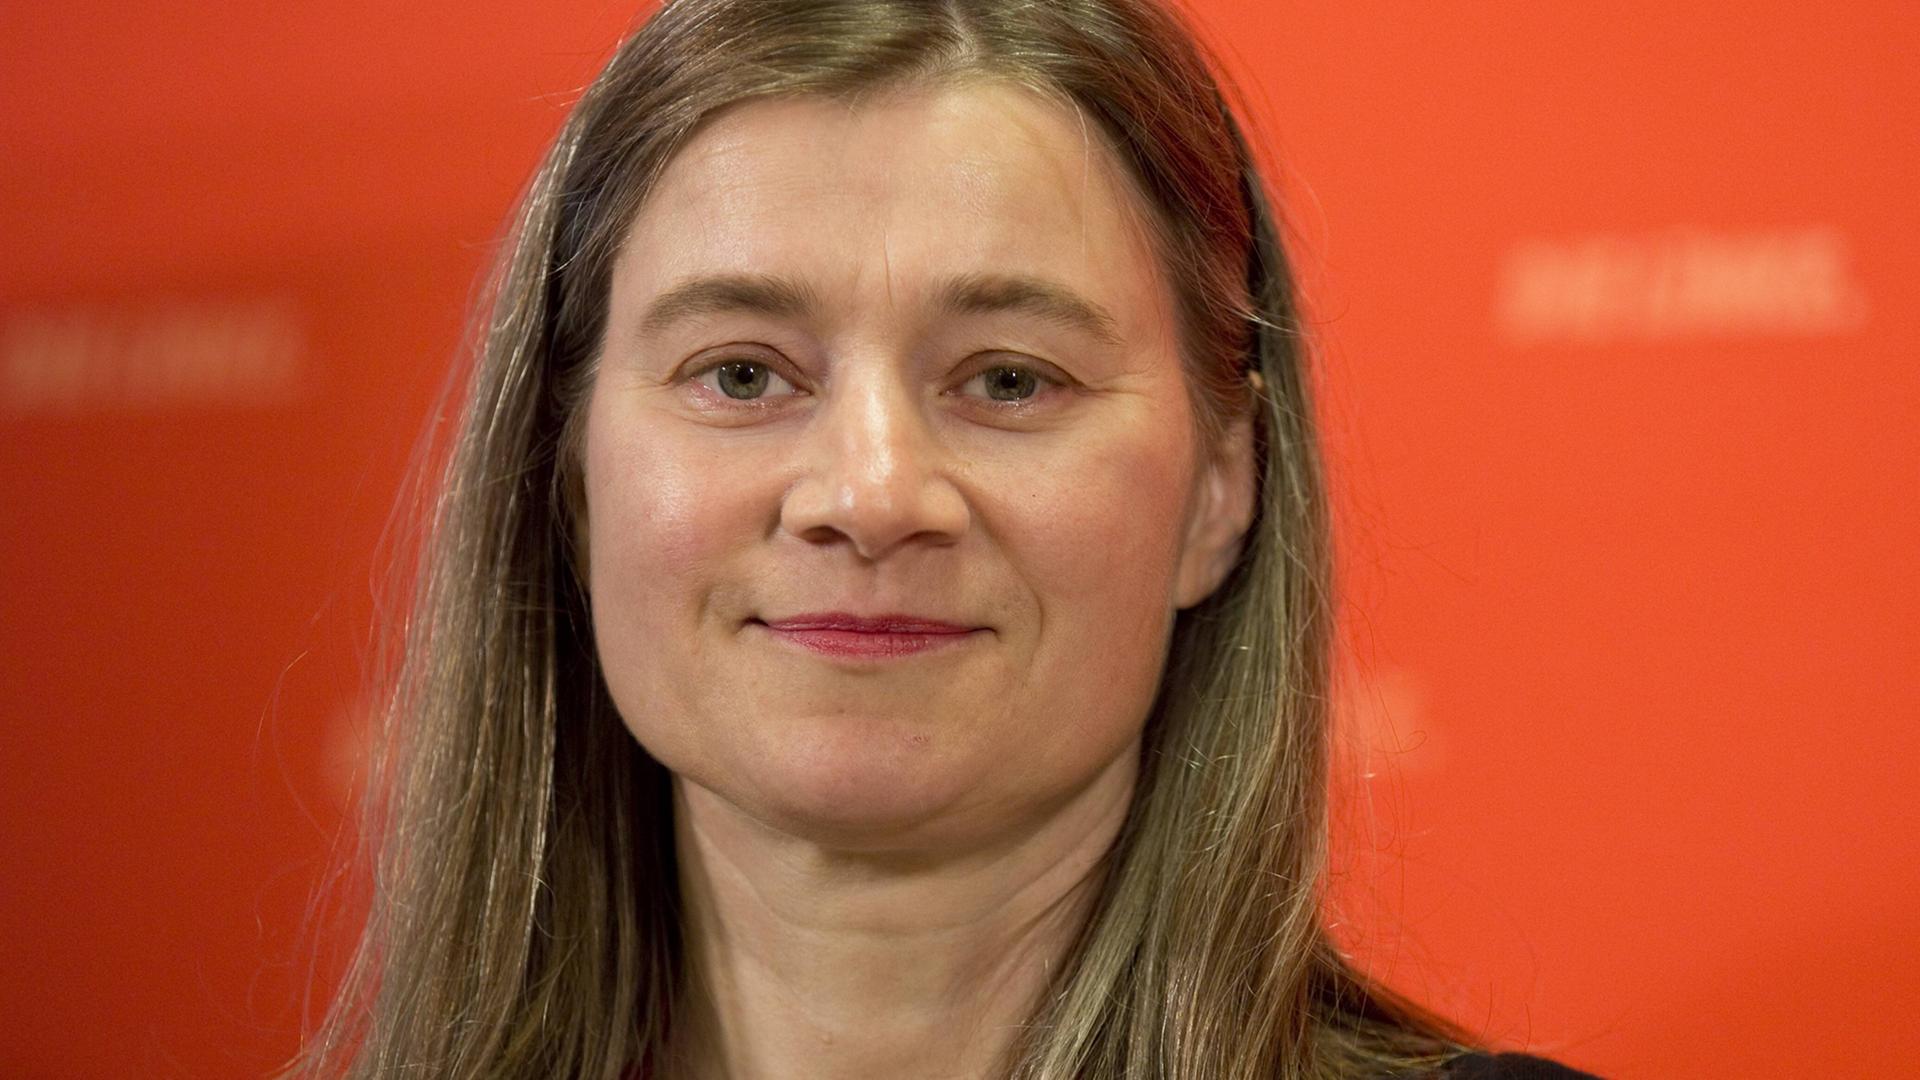 Anke Domscheit-Berg sitzt als parteilose Abgeordnete für Die Linke im Bundestag.